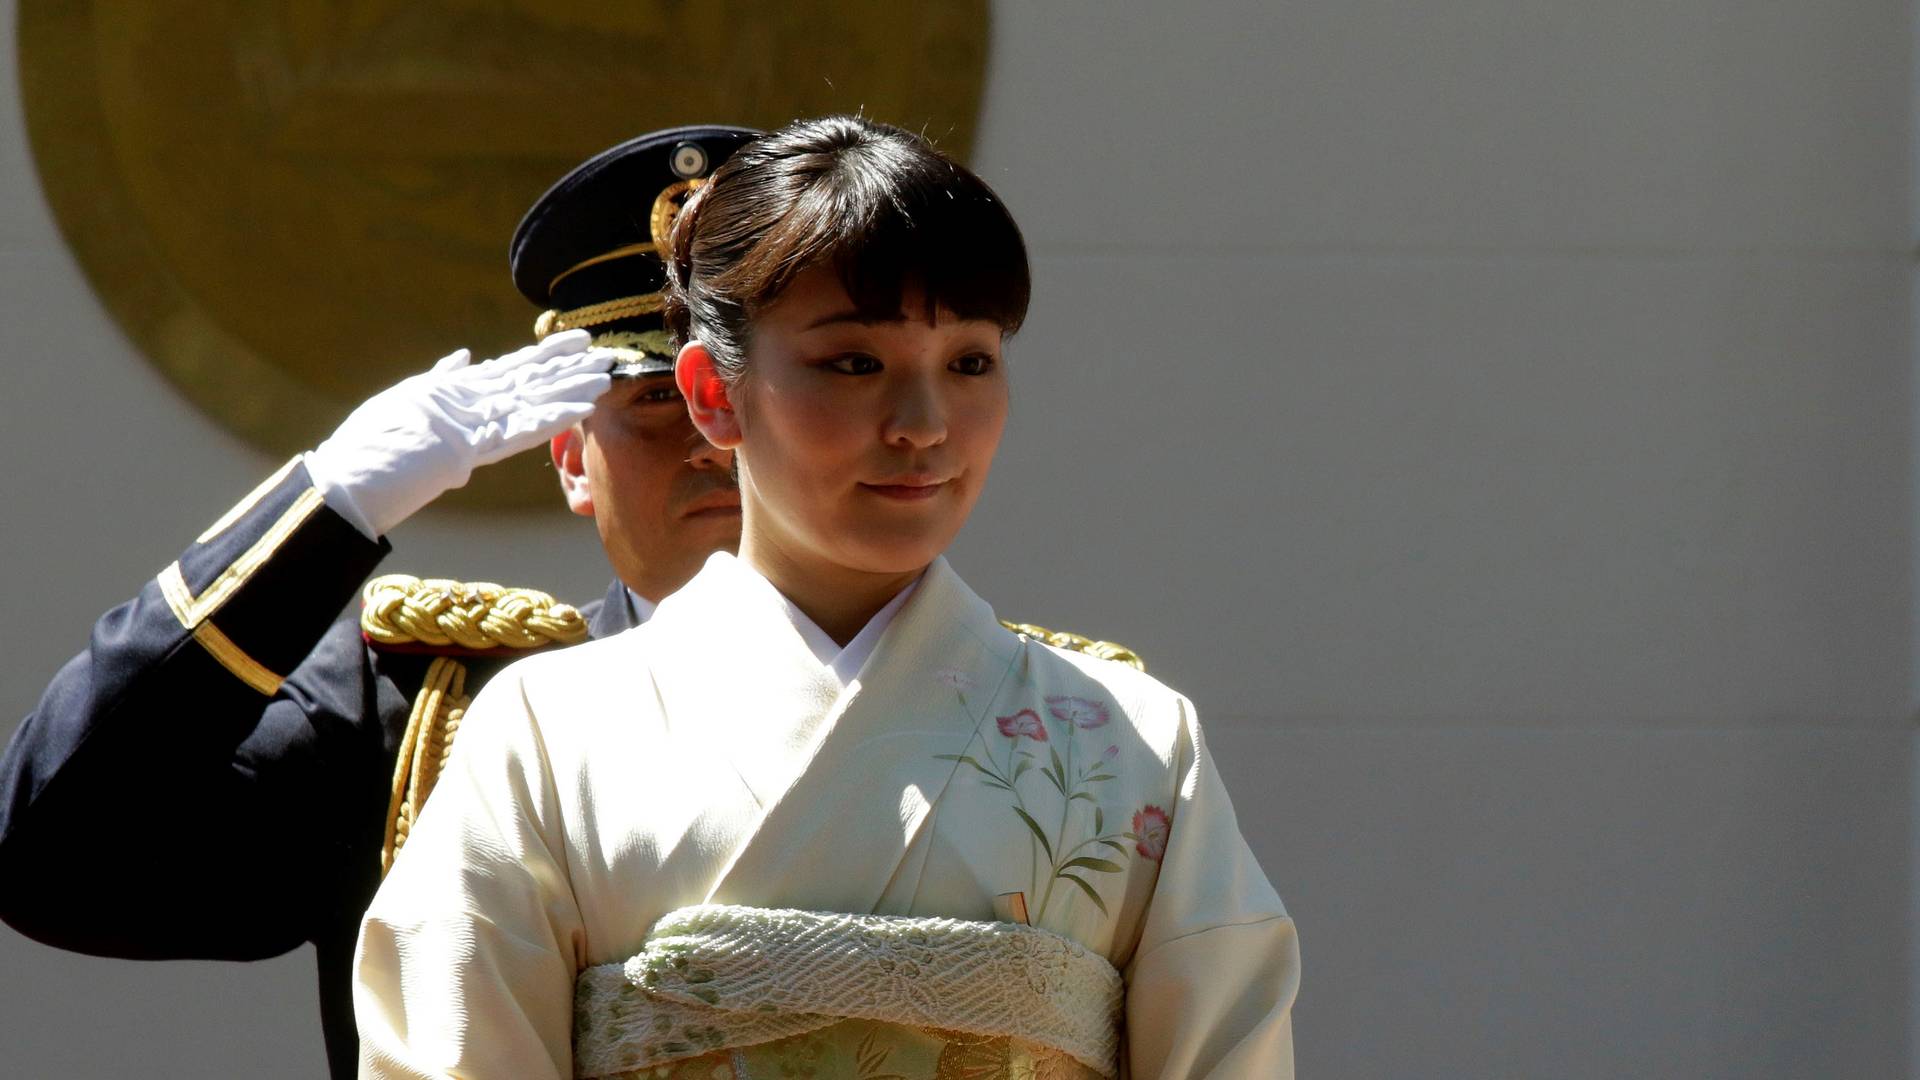 японская принцесса фото